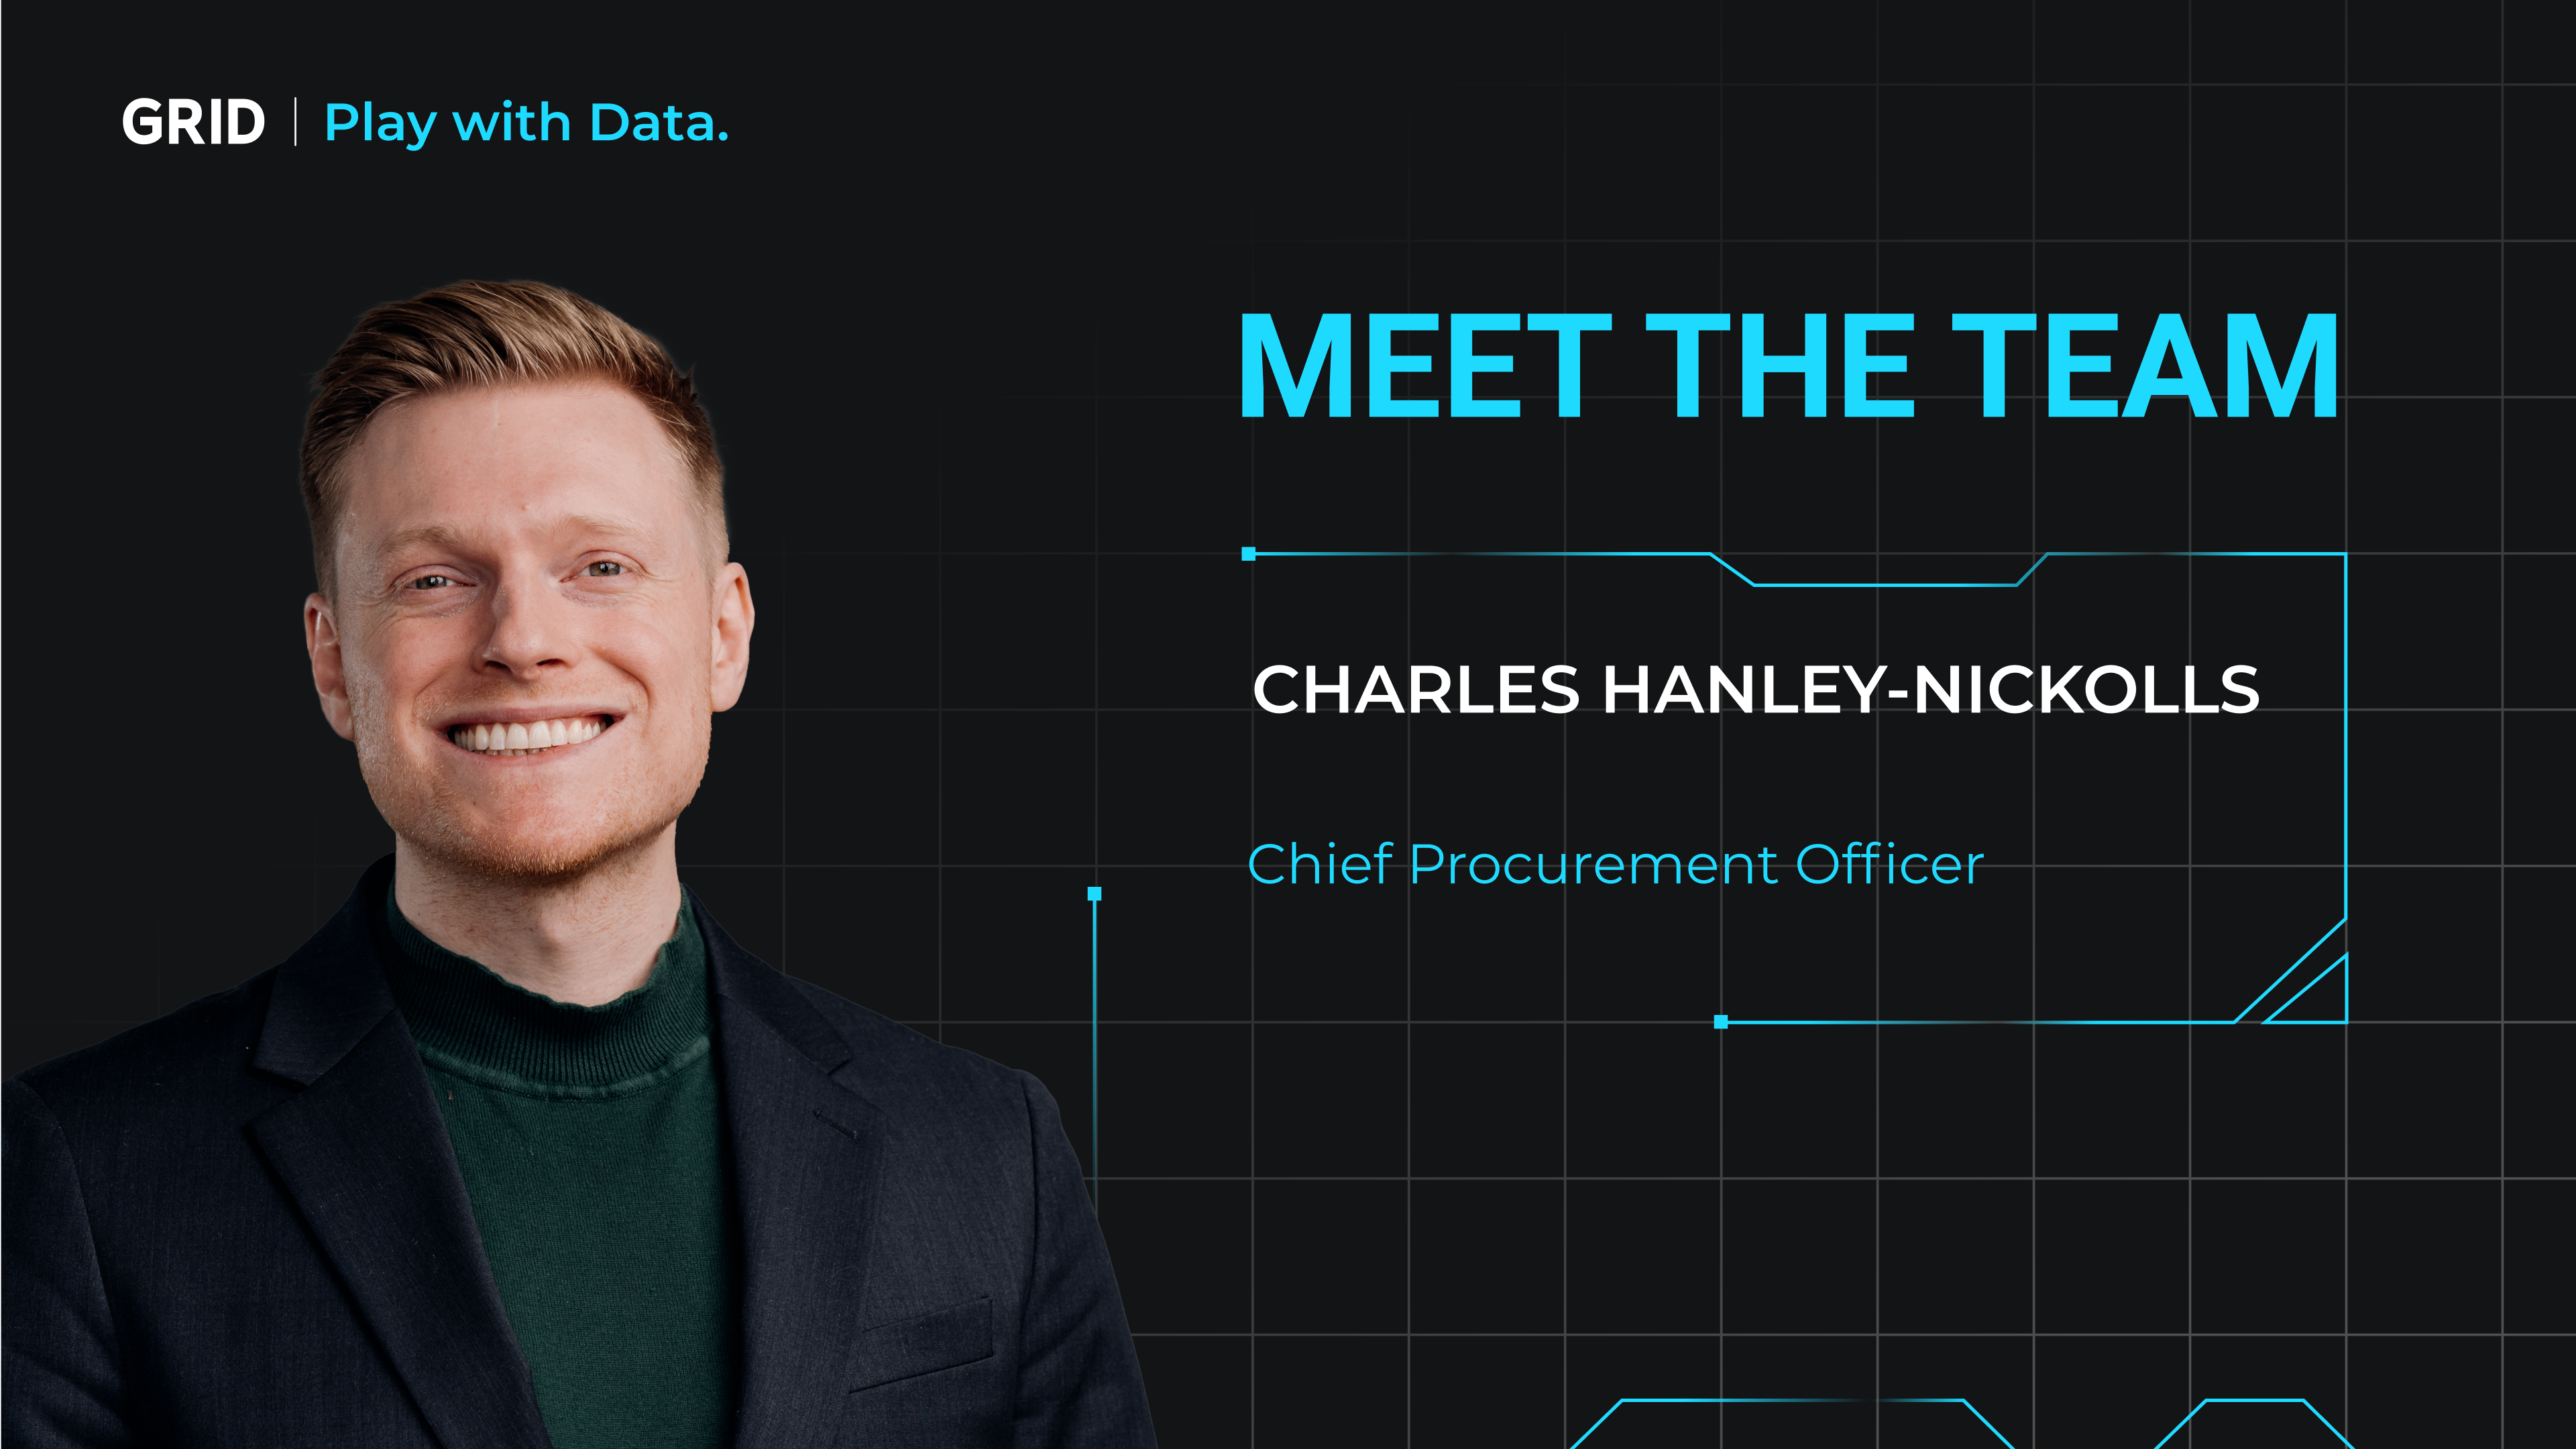 Meet the Team - Charles Hanley-Nickolls